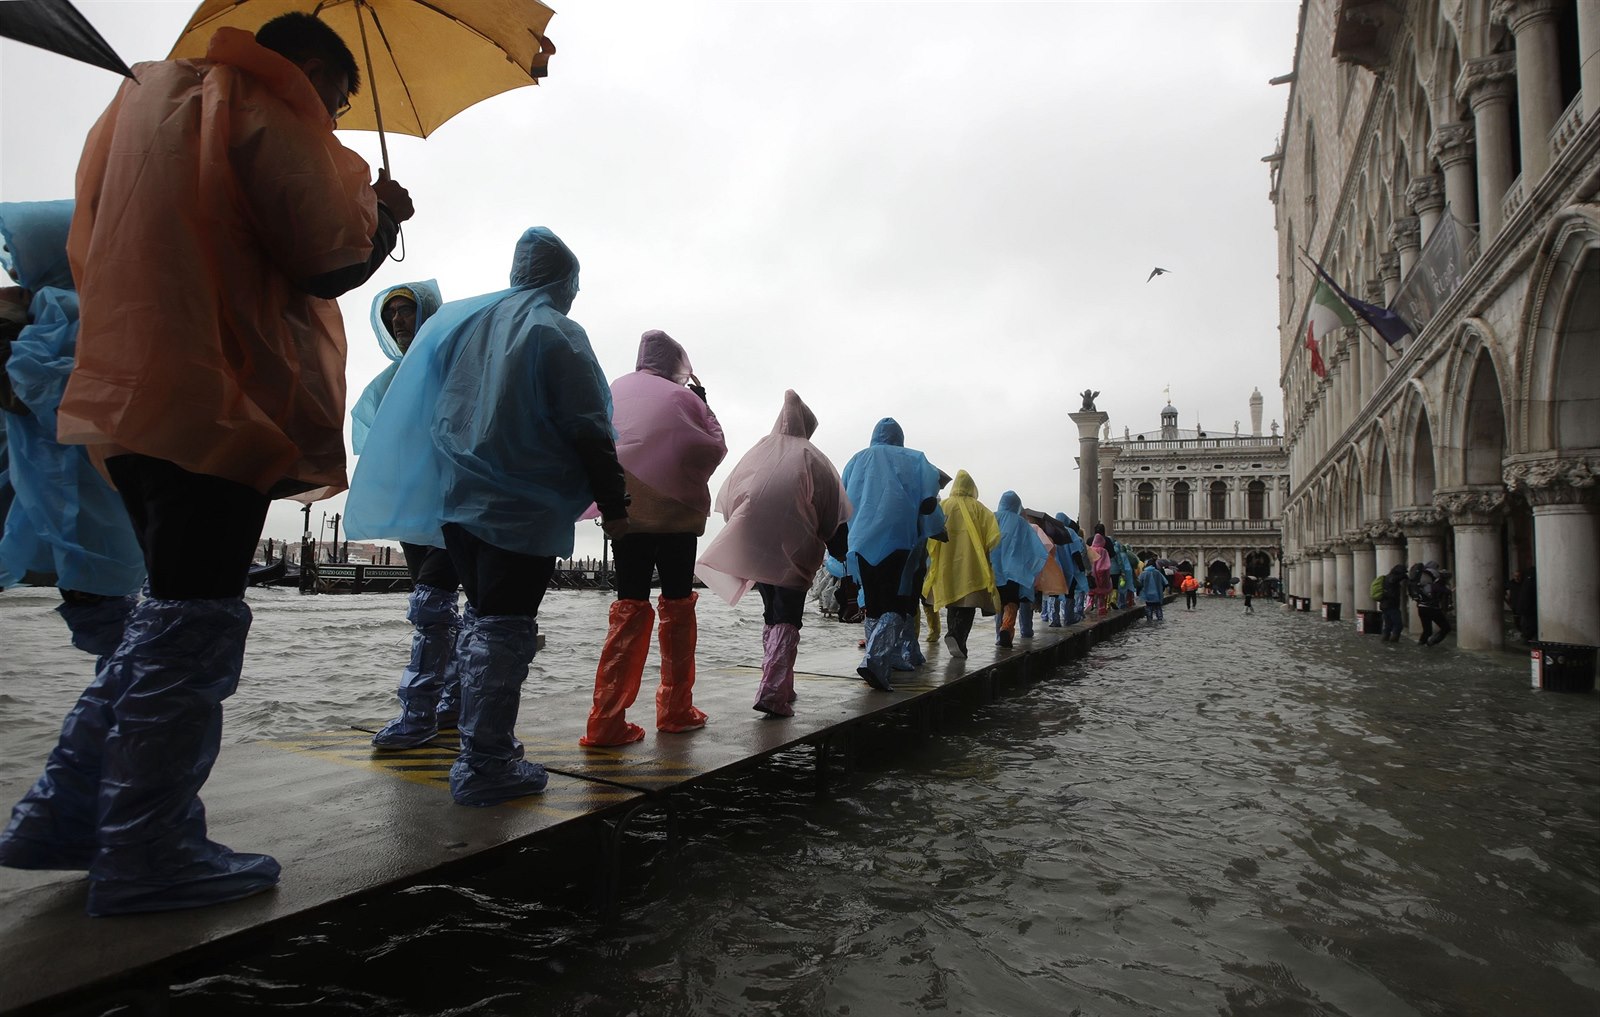 Déšť zaplavil historické centrum Benátek, hoteloví turisté fasují holínky -  iDNES.cz